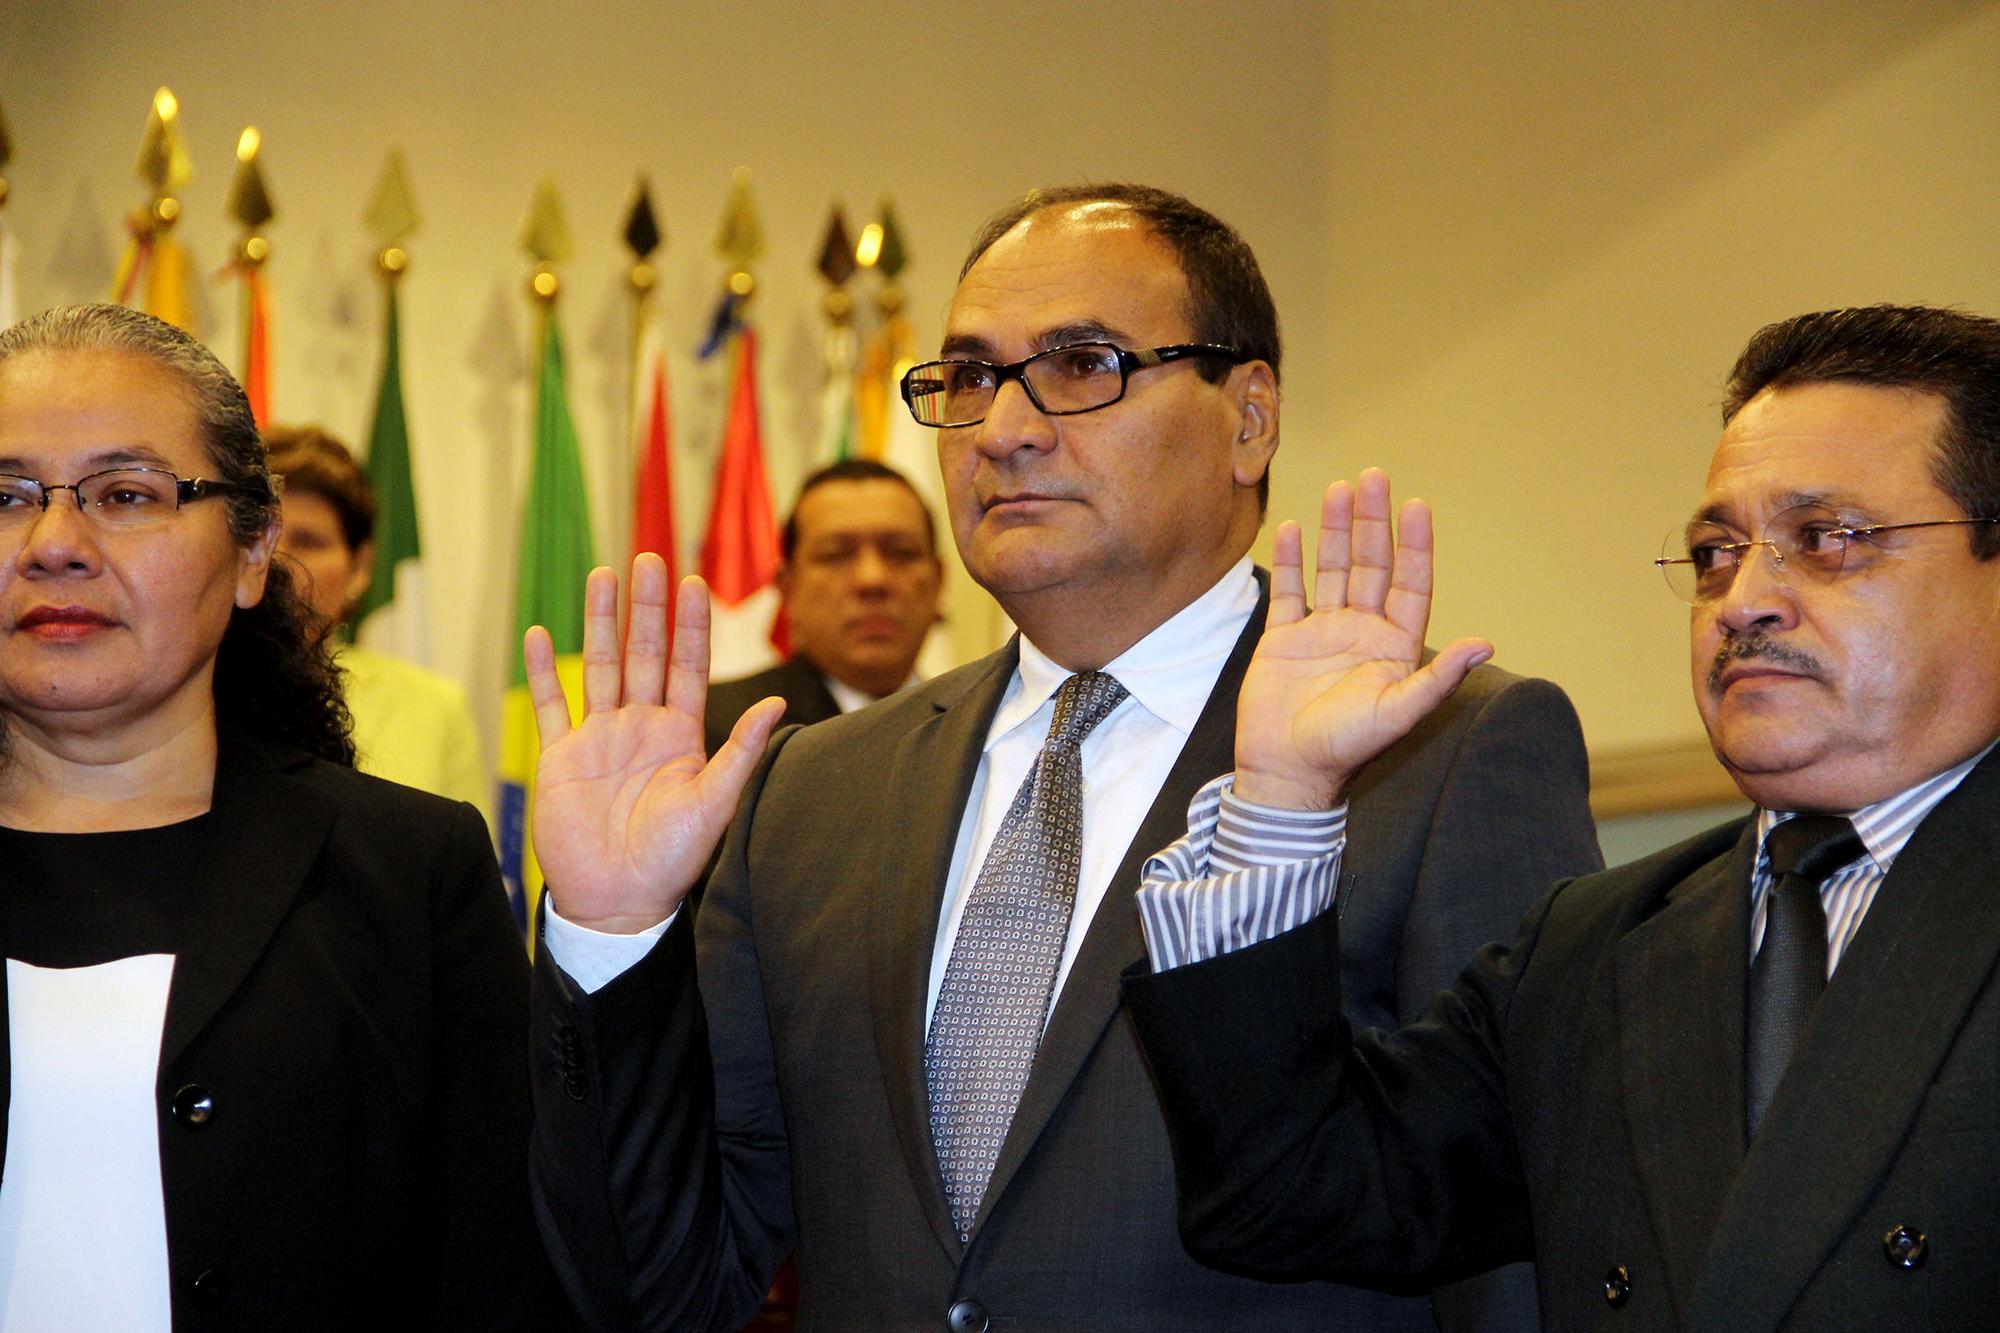 Óscar Alberto López Jerez (al centro) fue nombrado magistrado de la Corte Suprema de Justicia el 24 de septiembre del 2015. El 1 de mayo de 2021 fue entronizado por el bukelismo como nuevo magistrado presidente de la Corte Suprema. Foto: Asamblea Legislativa de El Salvador